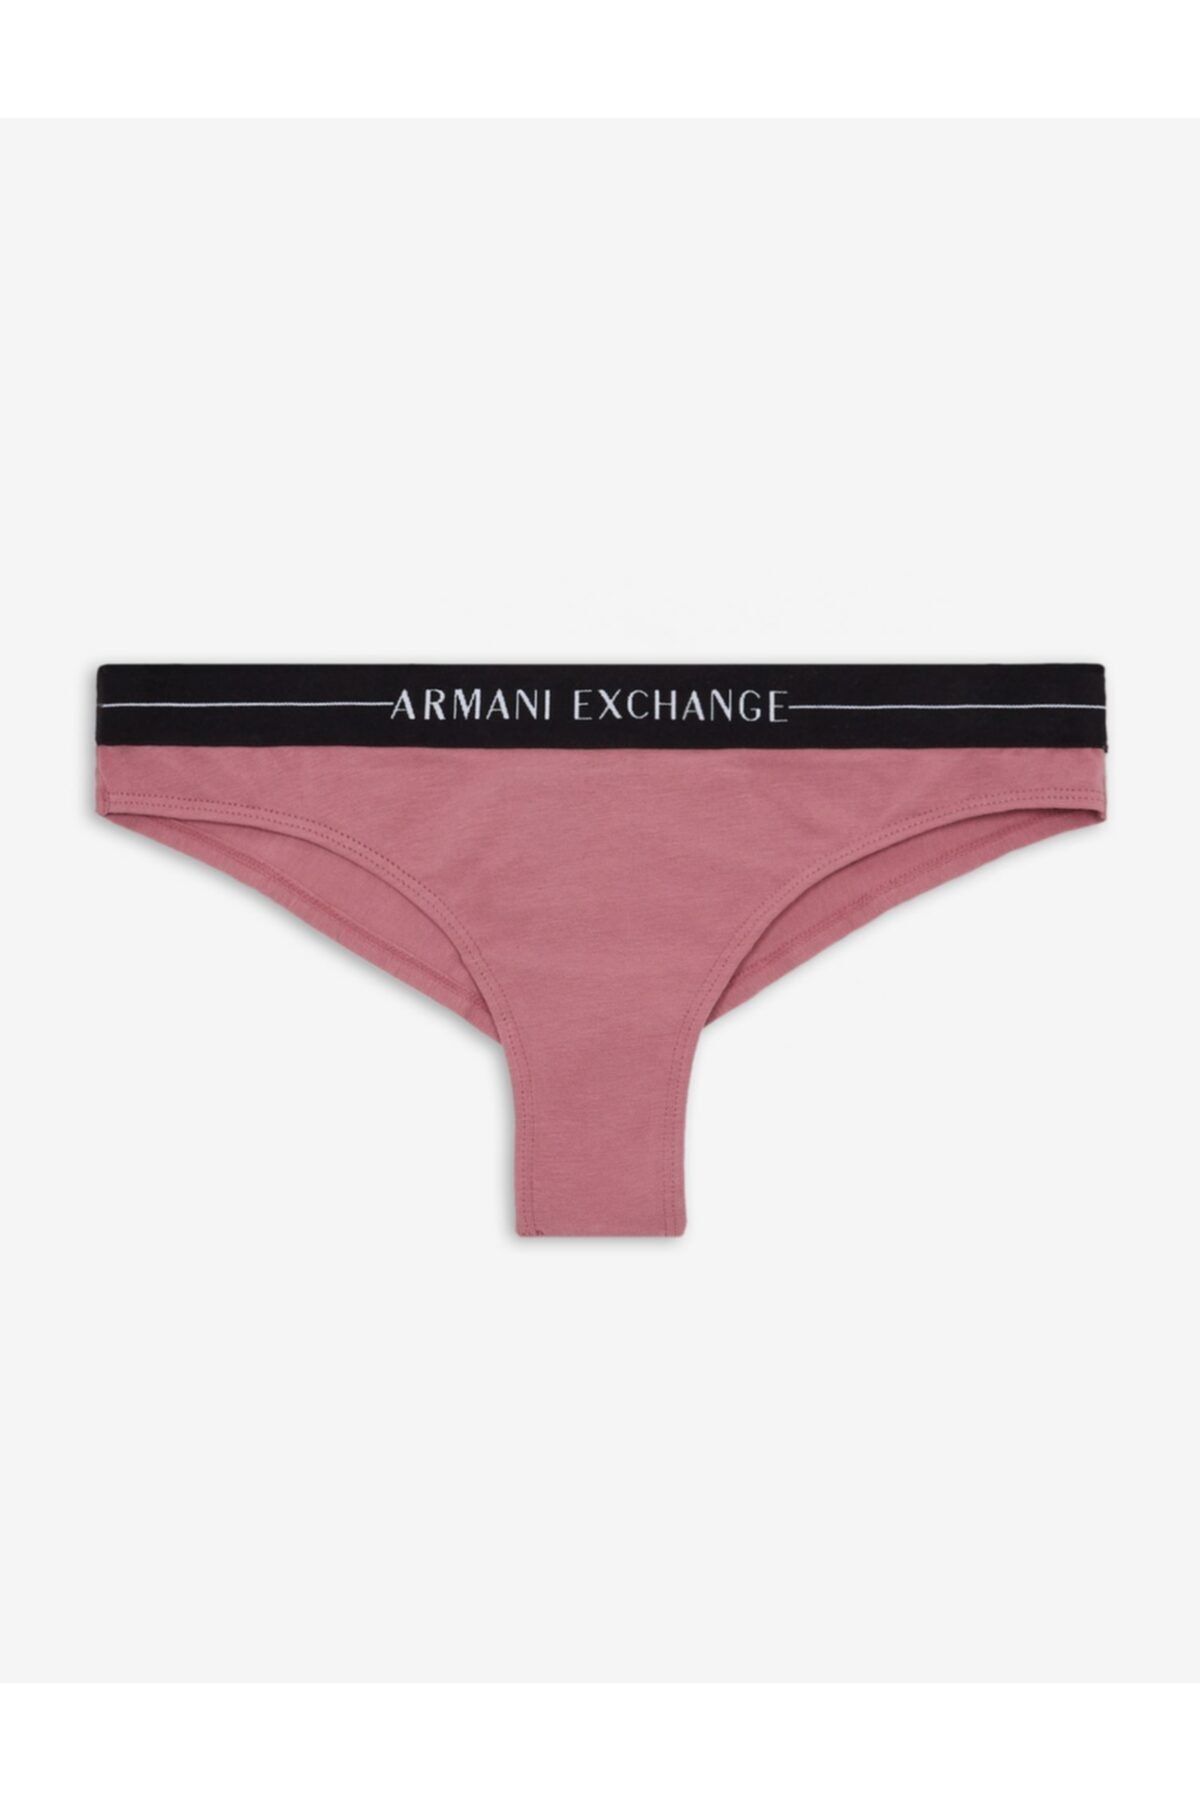 Armani Exchange Kadın Külot